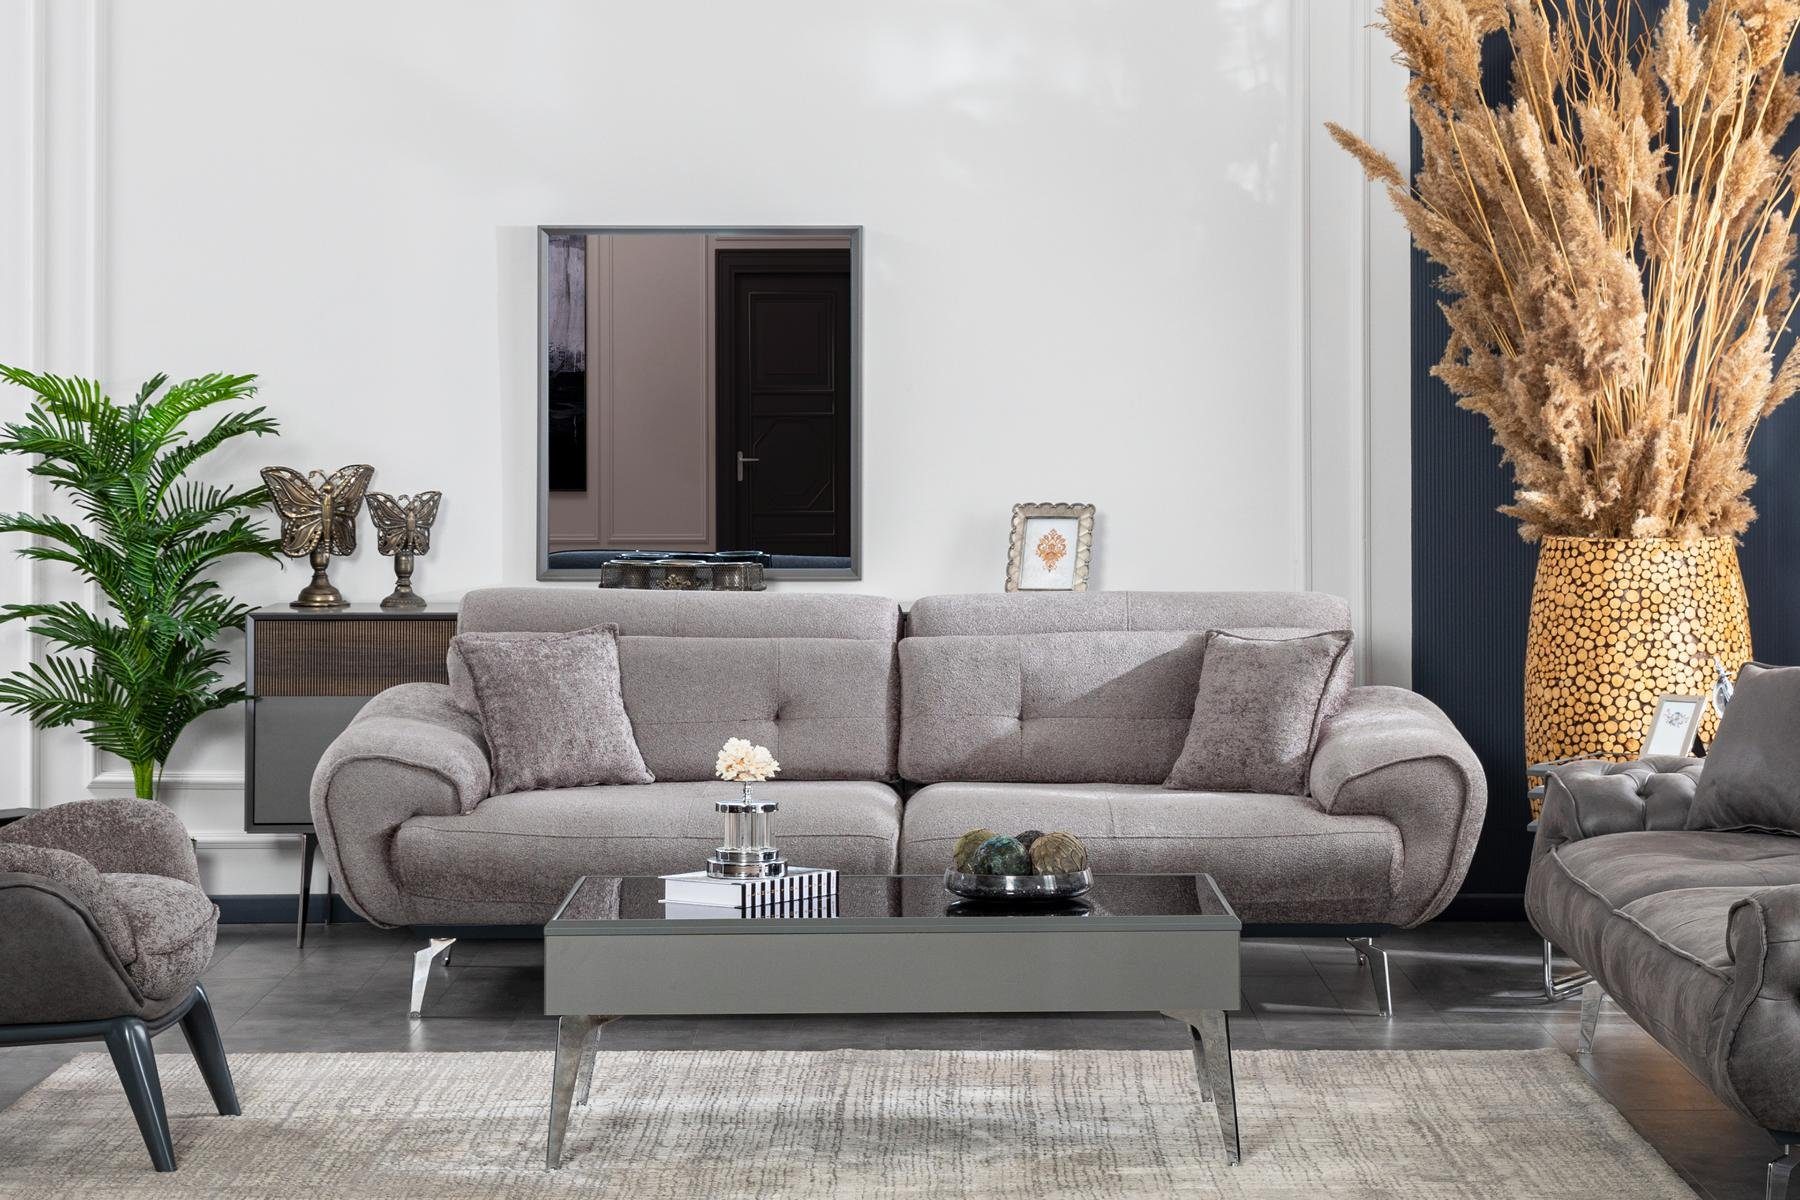 JVmoebel Sofa Italienische Stil Europe Luxus in Design, Made Sofa Wohnzimmer